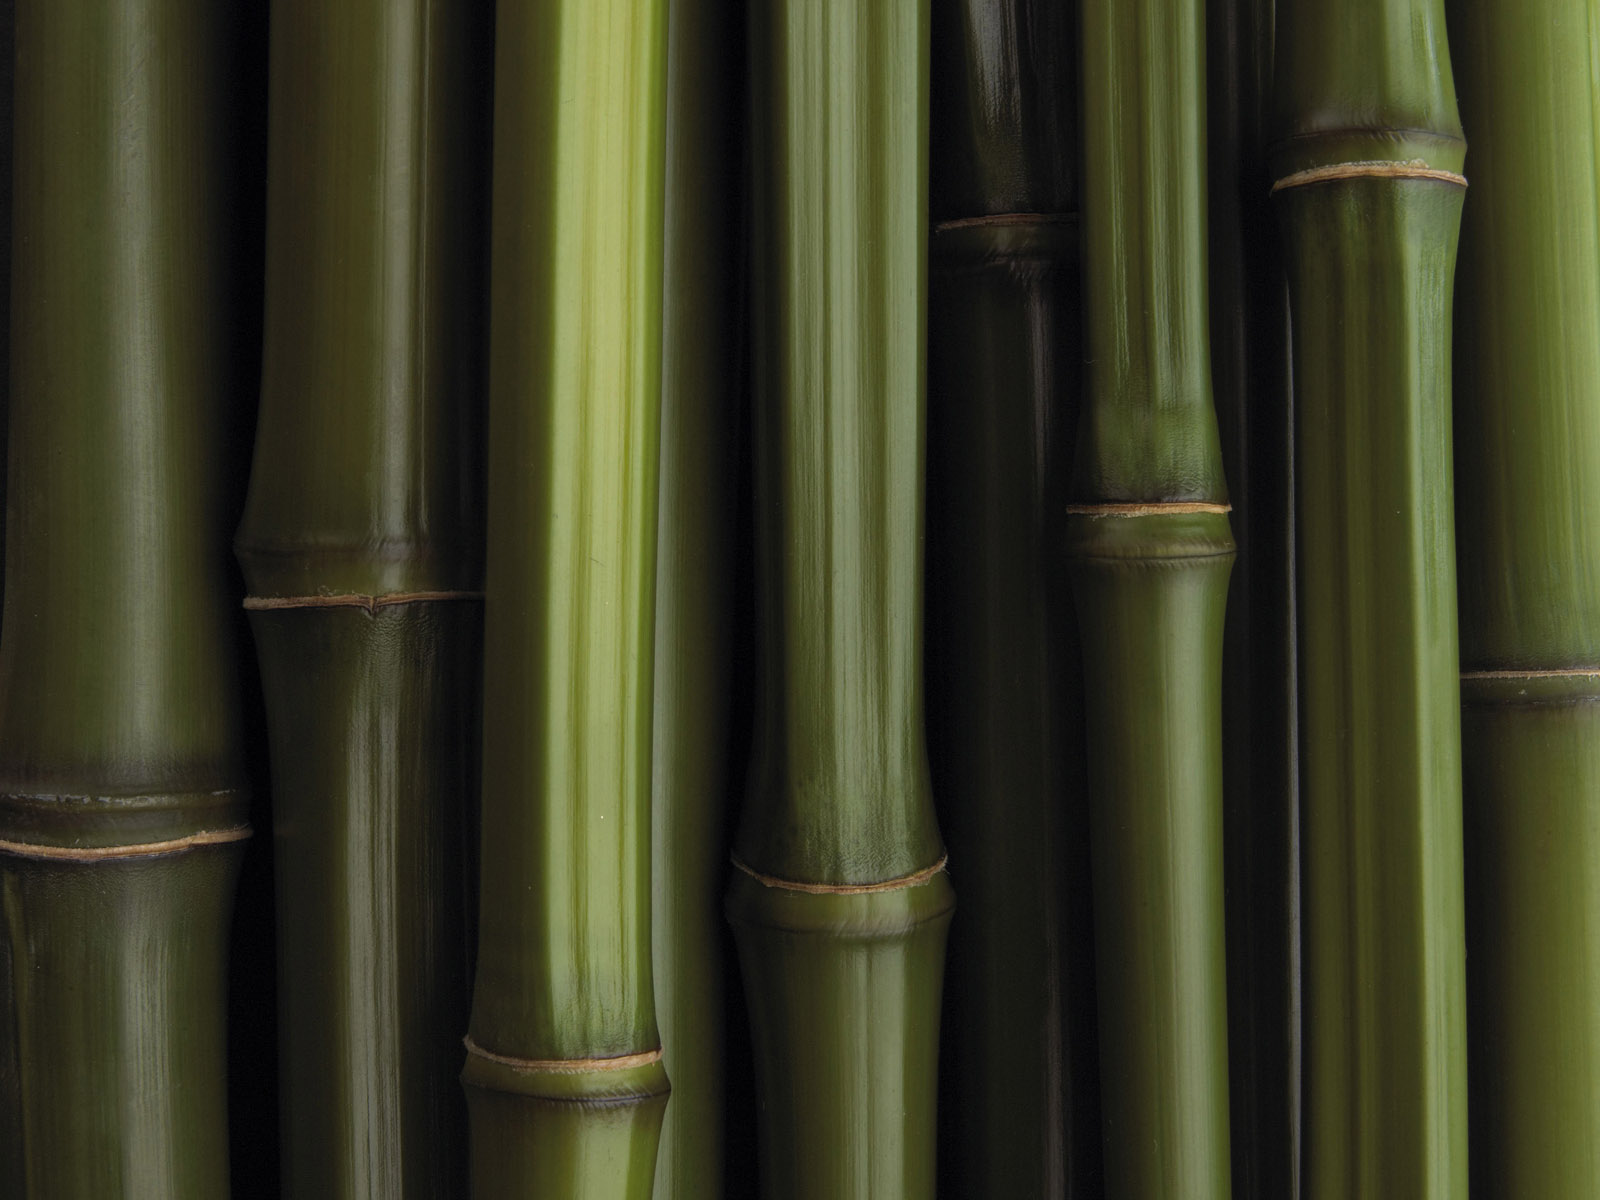 Previous Creative Wallpaper Bamboo Texture